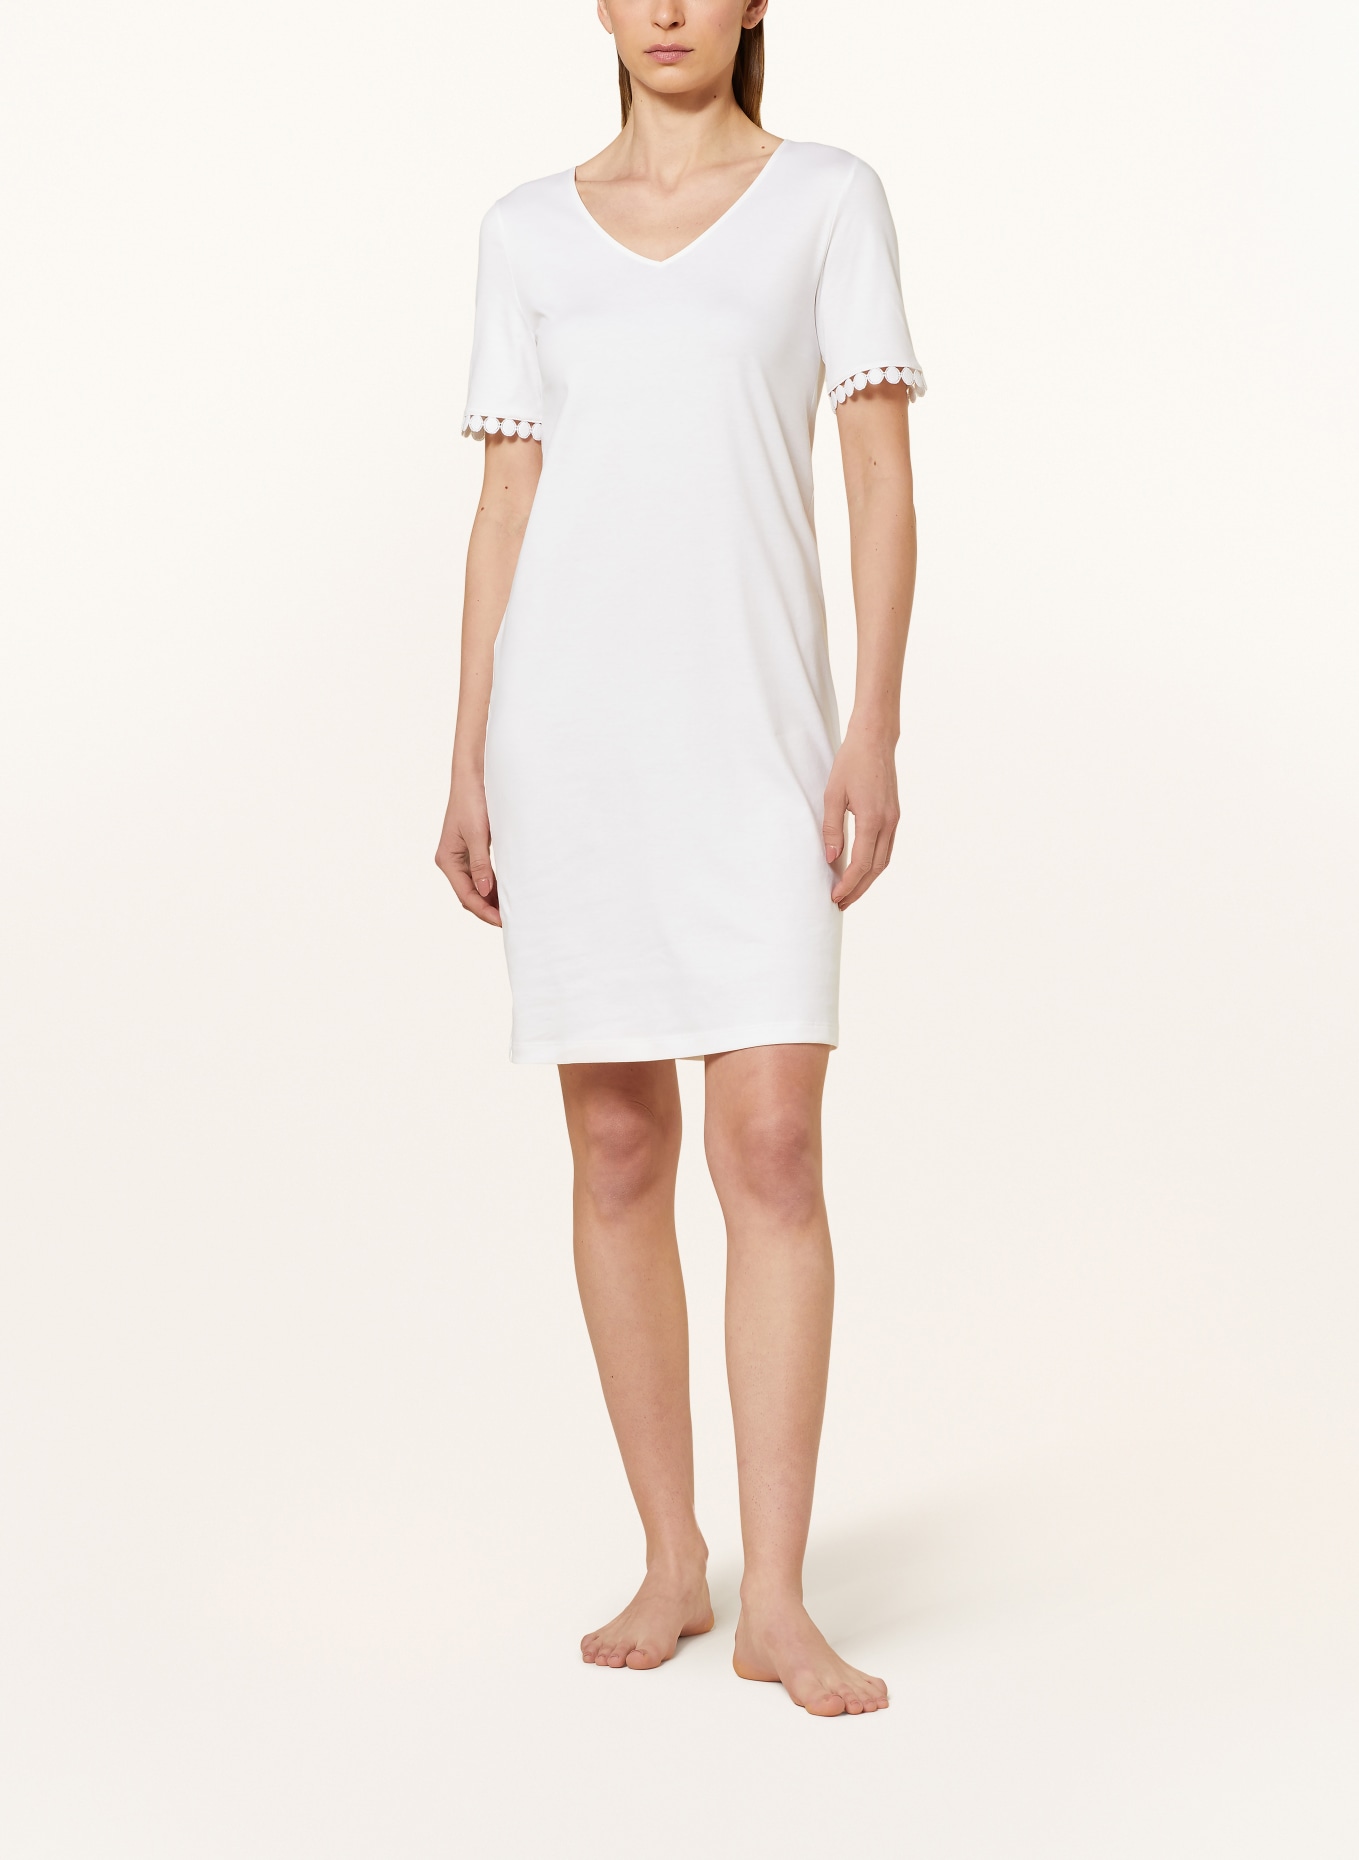 HANRO Nightgown ROSA, Color: ECRU (Image 2)